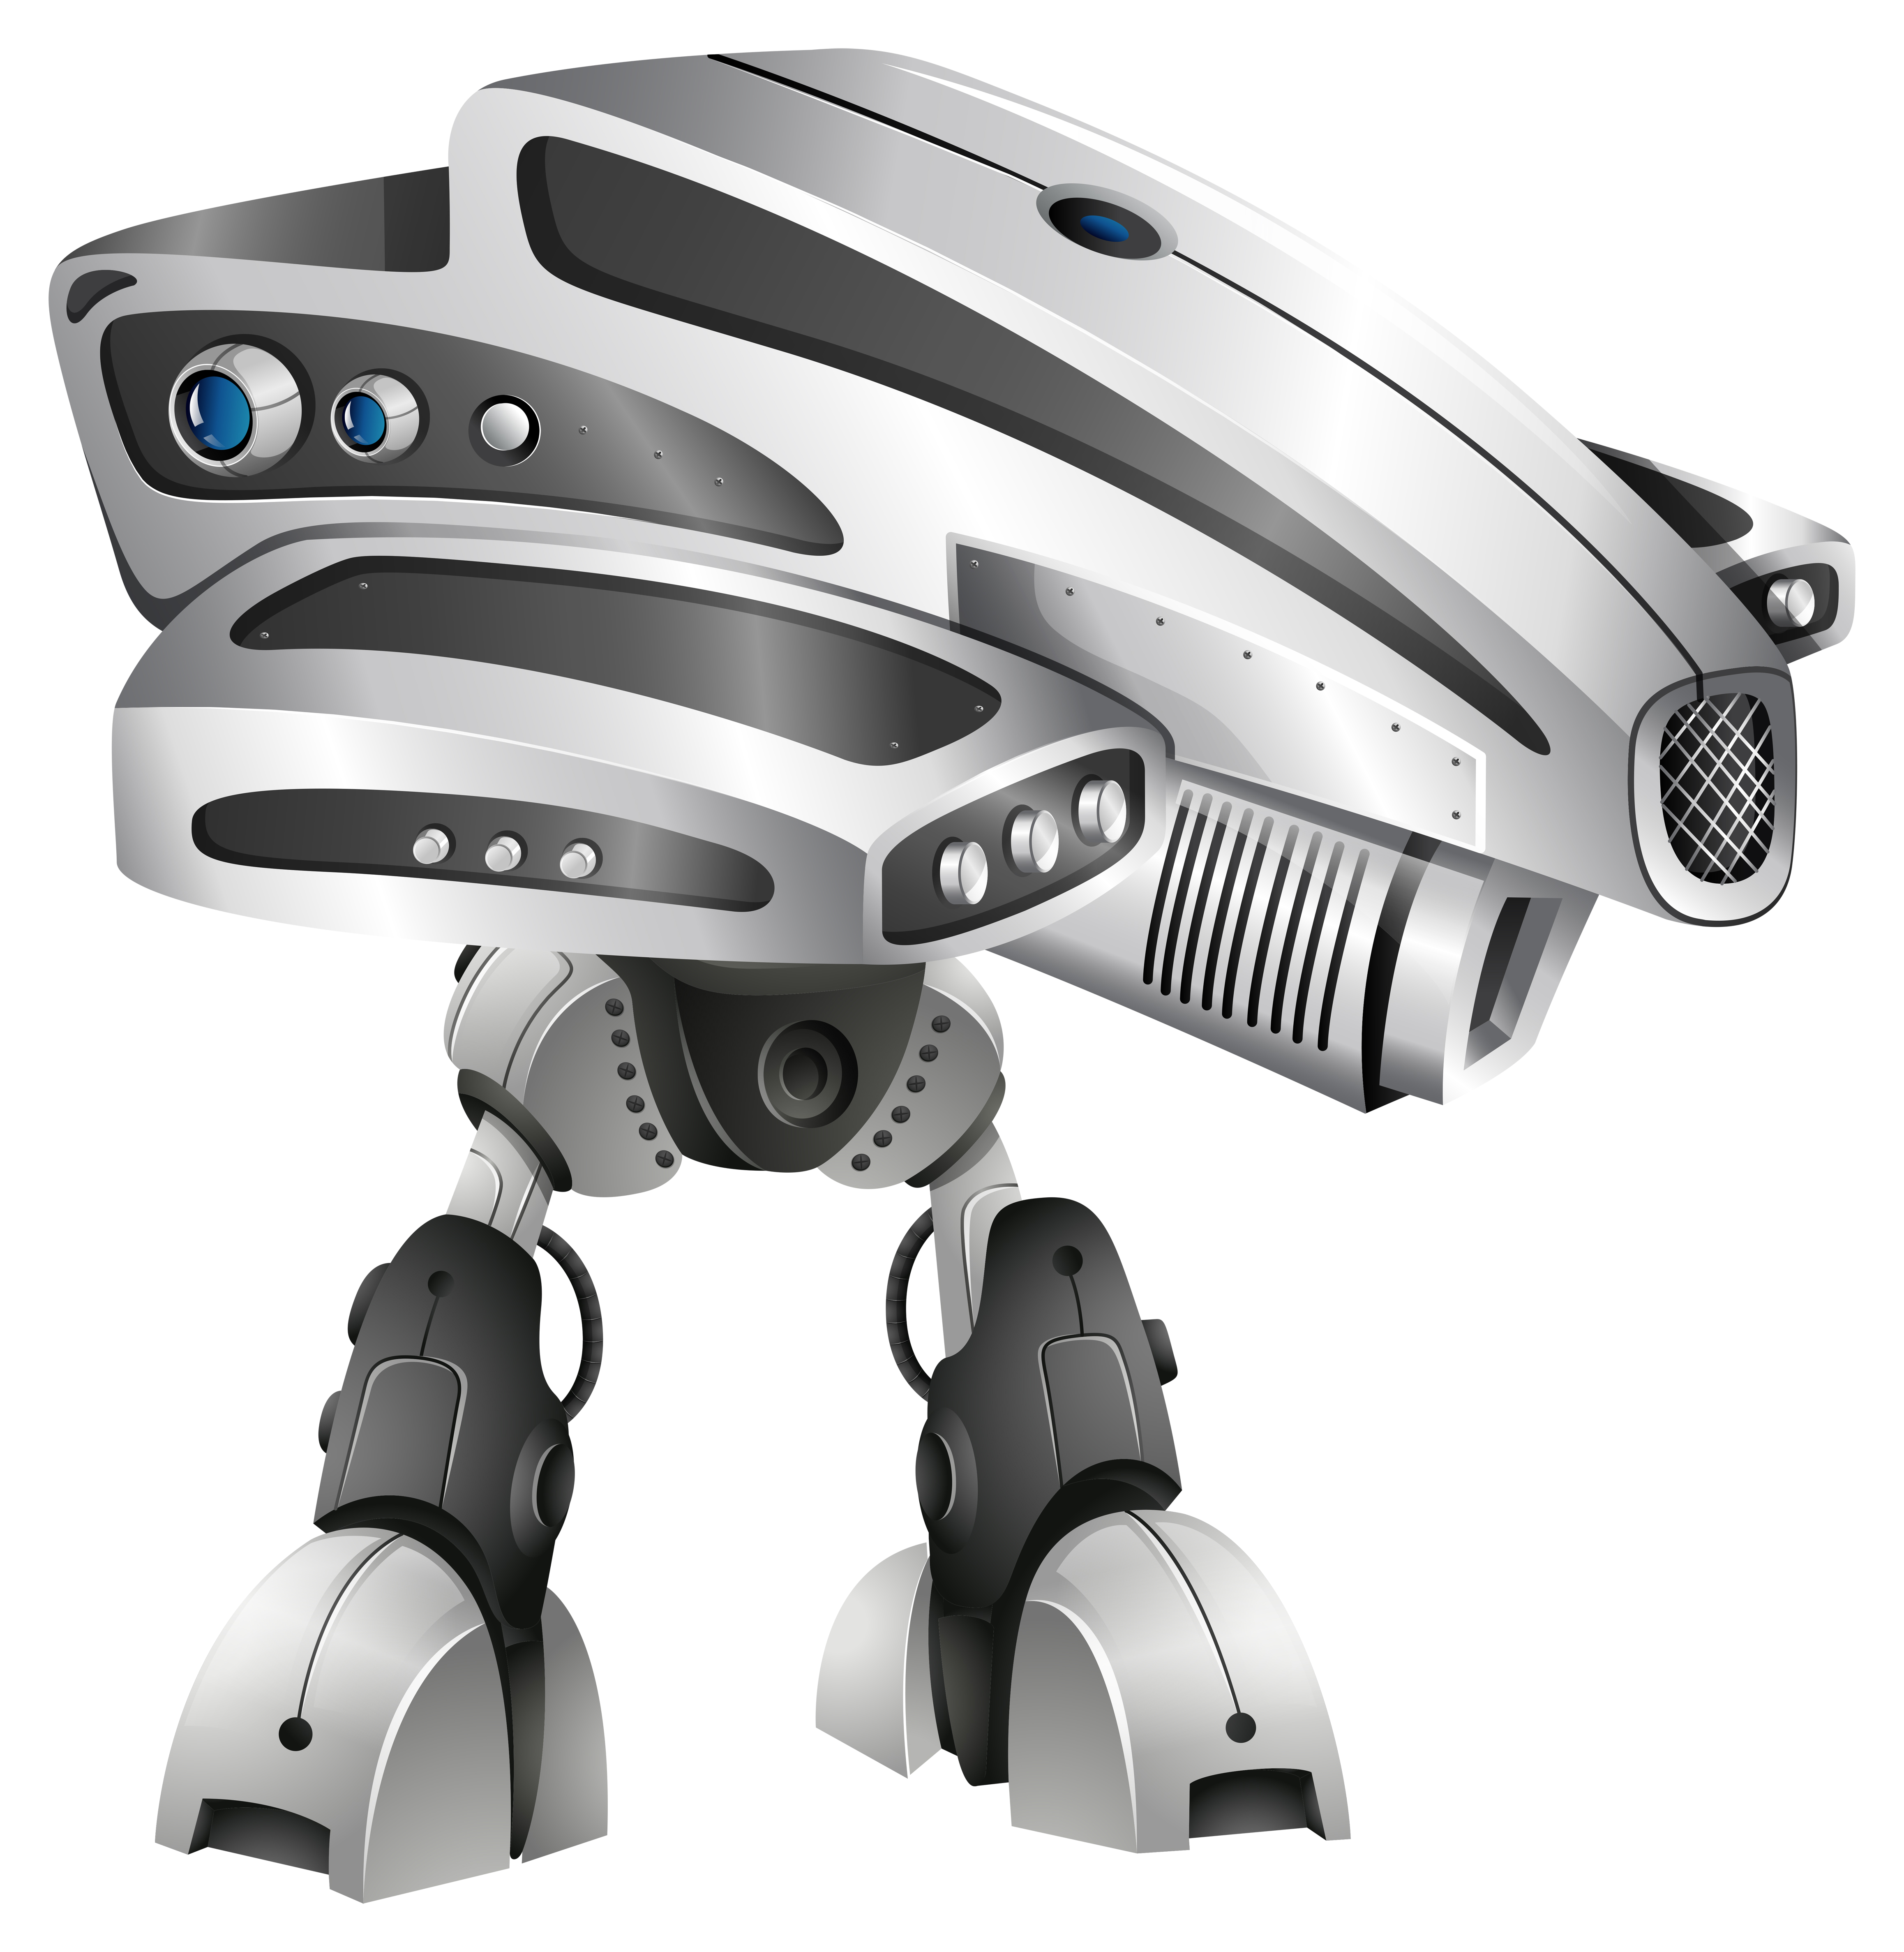 Download Robot Head Free Vector Art - (2798 Free Downloads)